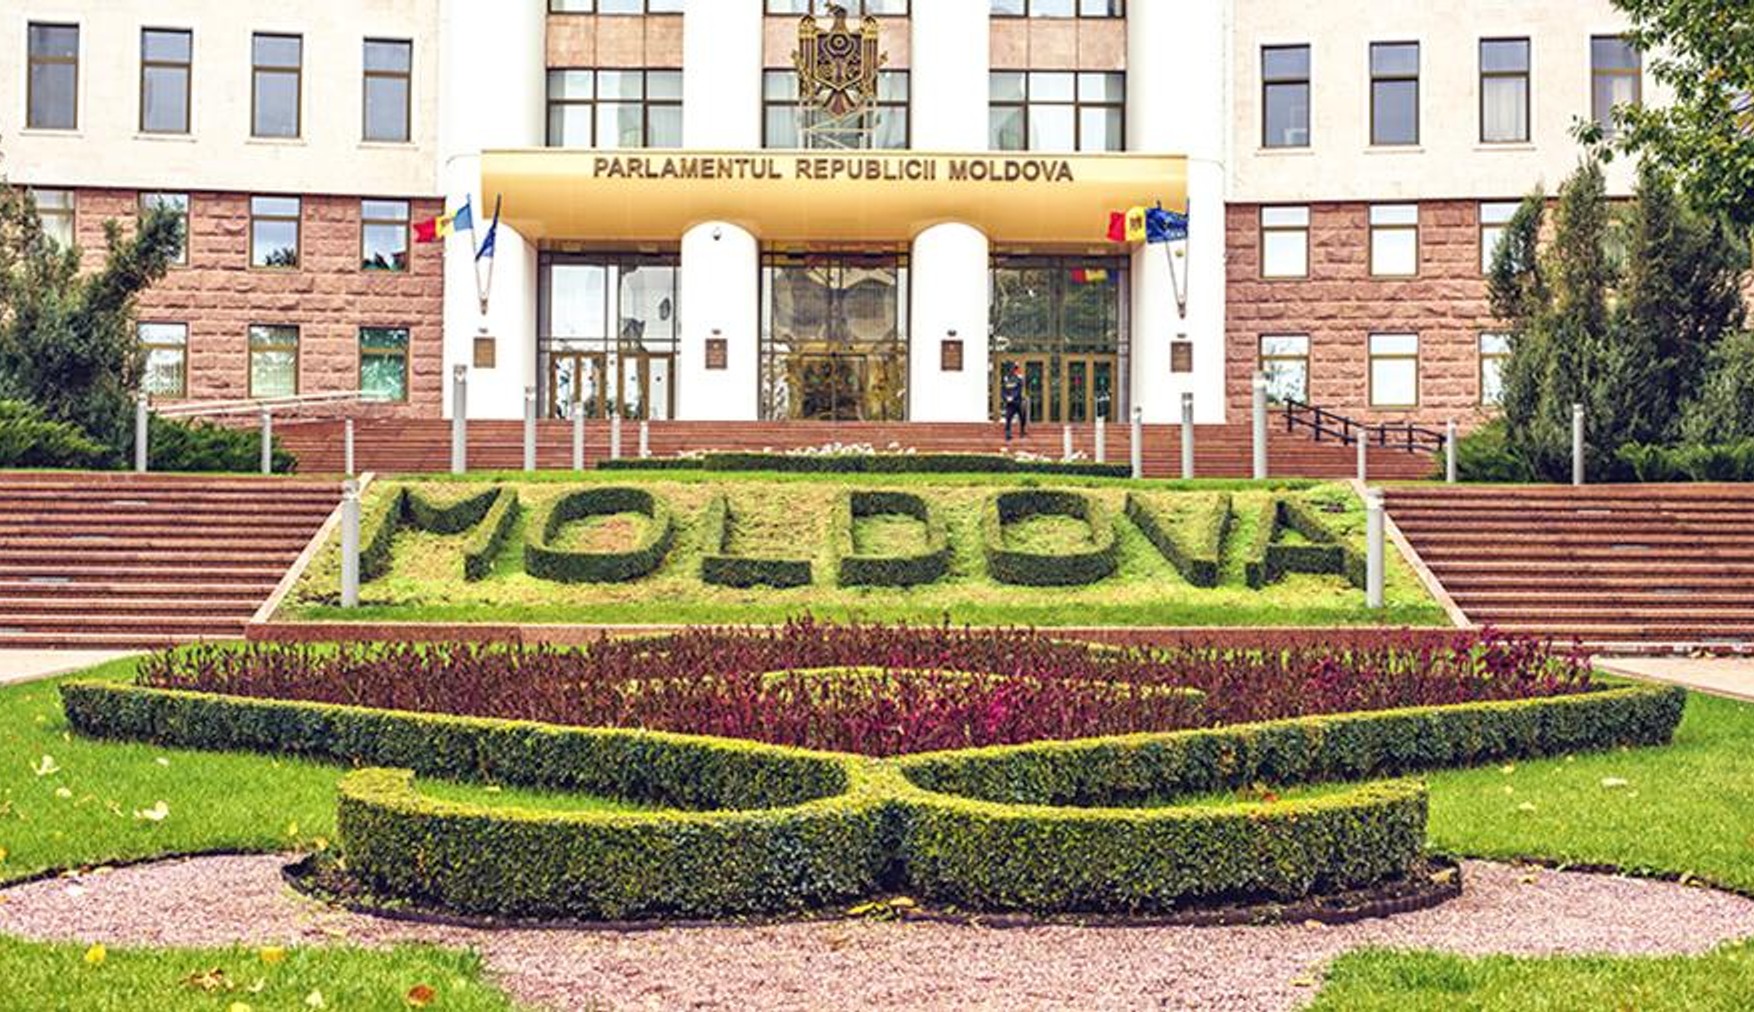 Політолог Валеріу Паша: Кремль програв вибори в Молдові, незважаючи на спроби підкупу виборців